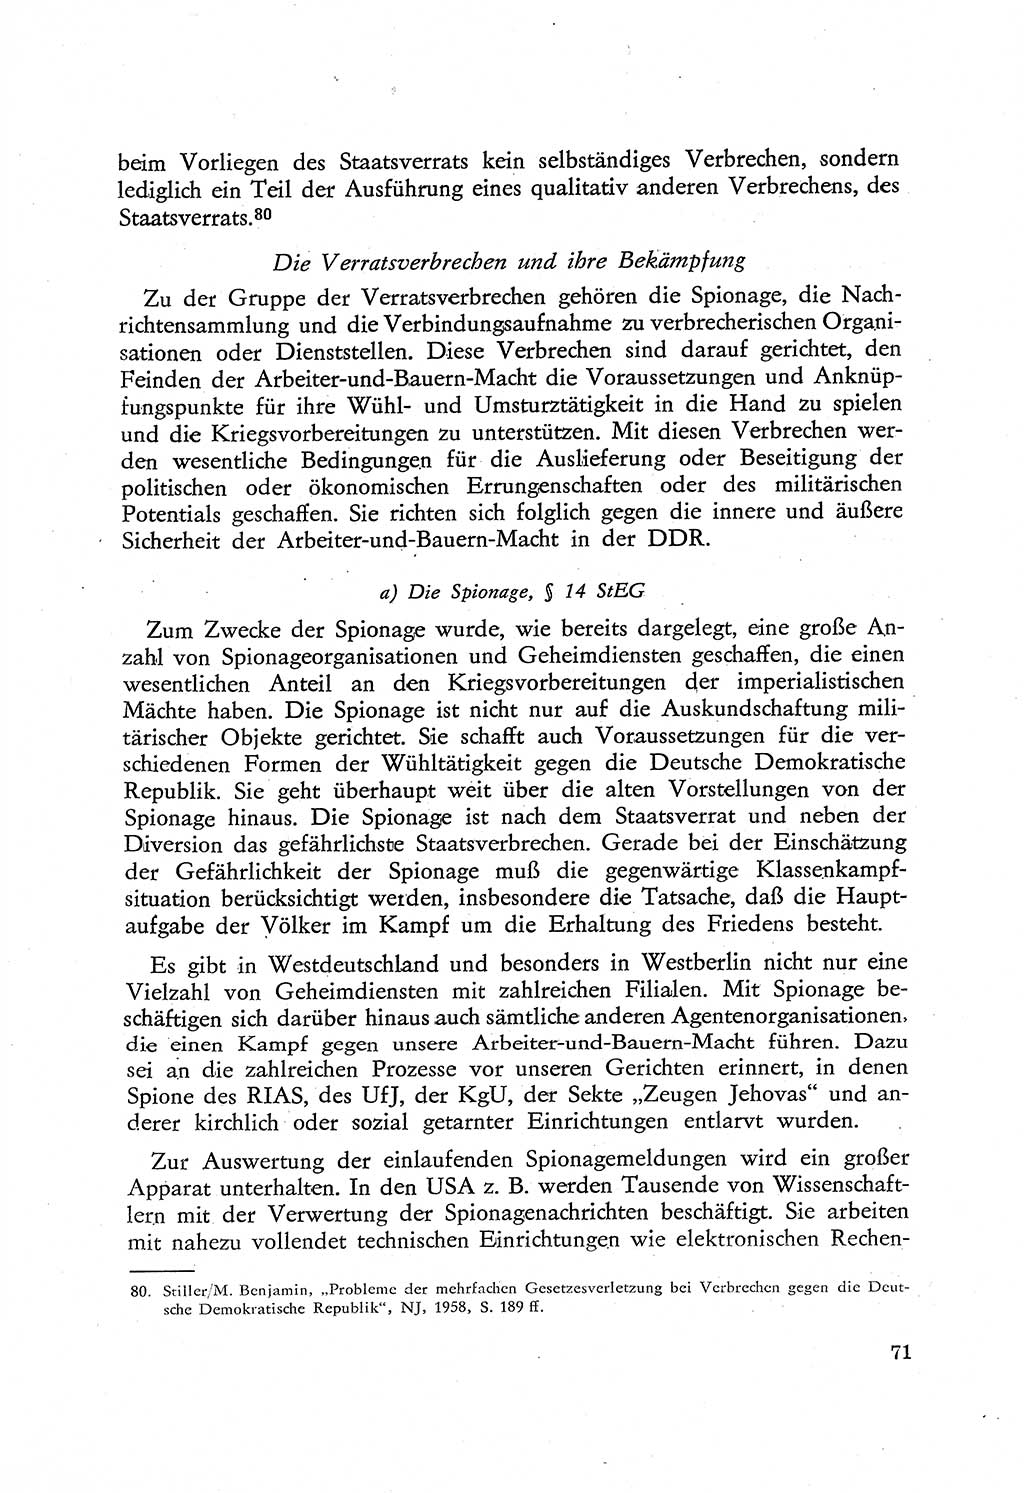 Beiträge zum Strafrecht [Deutsche Demokratische Republik (DDR)], Staatsverbrechen 1959, Seite 71 (Beitr. Strafr. DDR St.-Verbr. 1959, S. 71)